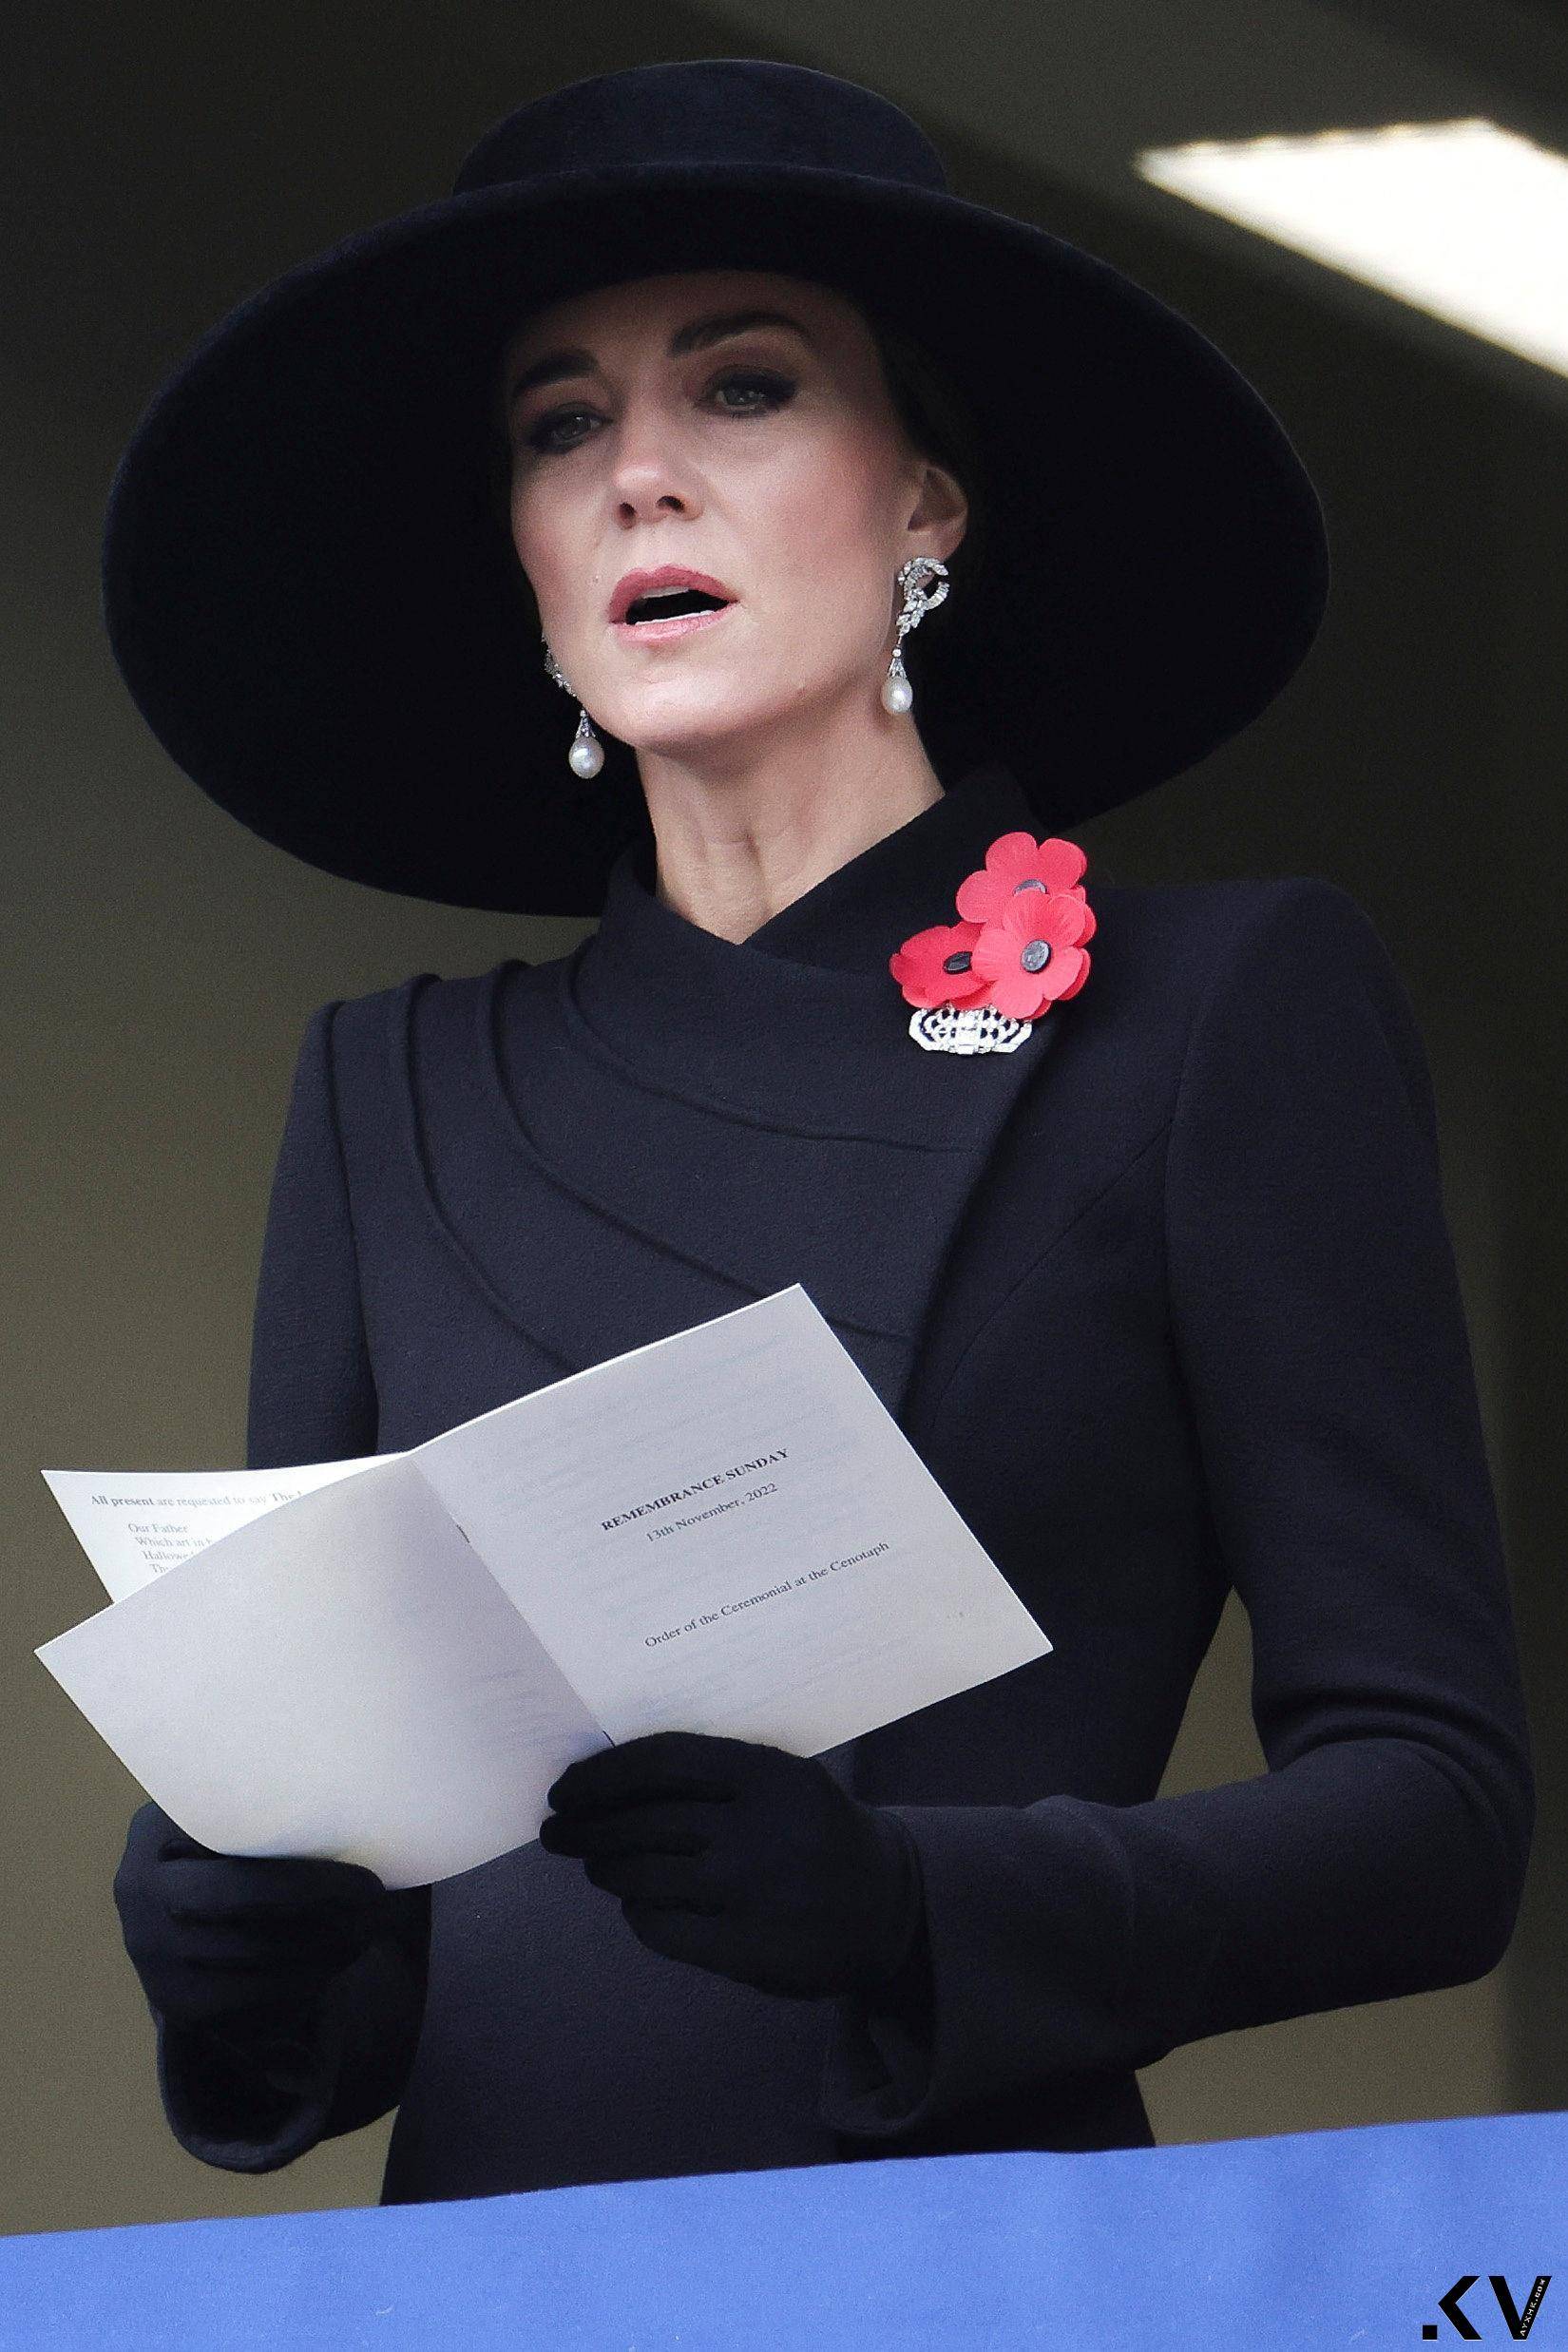 凯特王妃与碧翠丝公主连环撞衫　泄露两人包色购物习惯 时尚穿搭 图3张